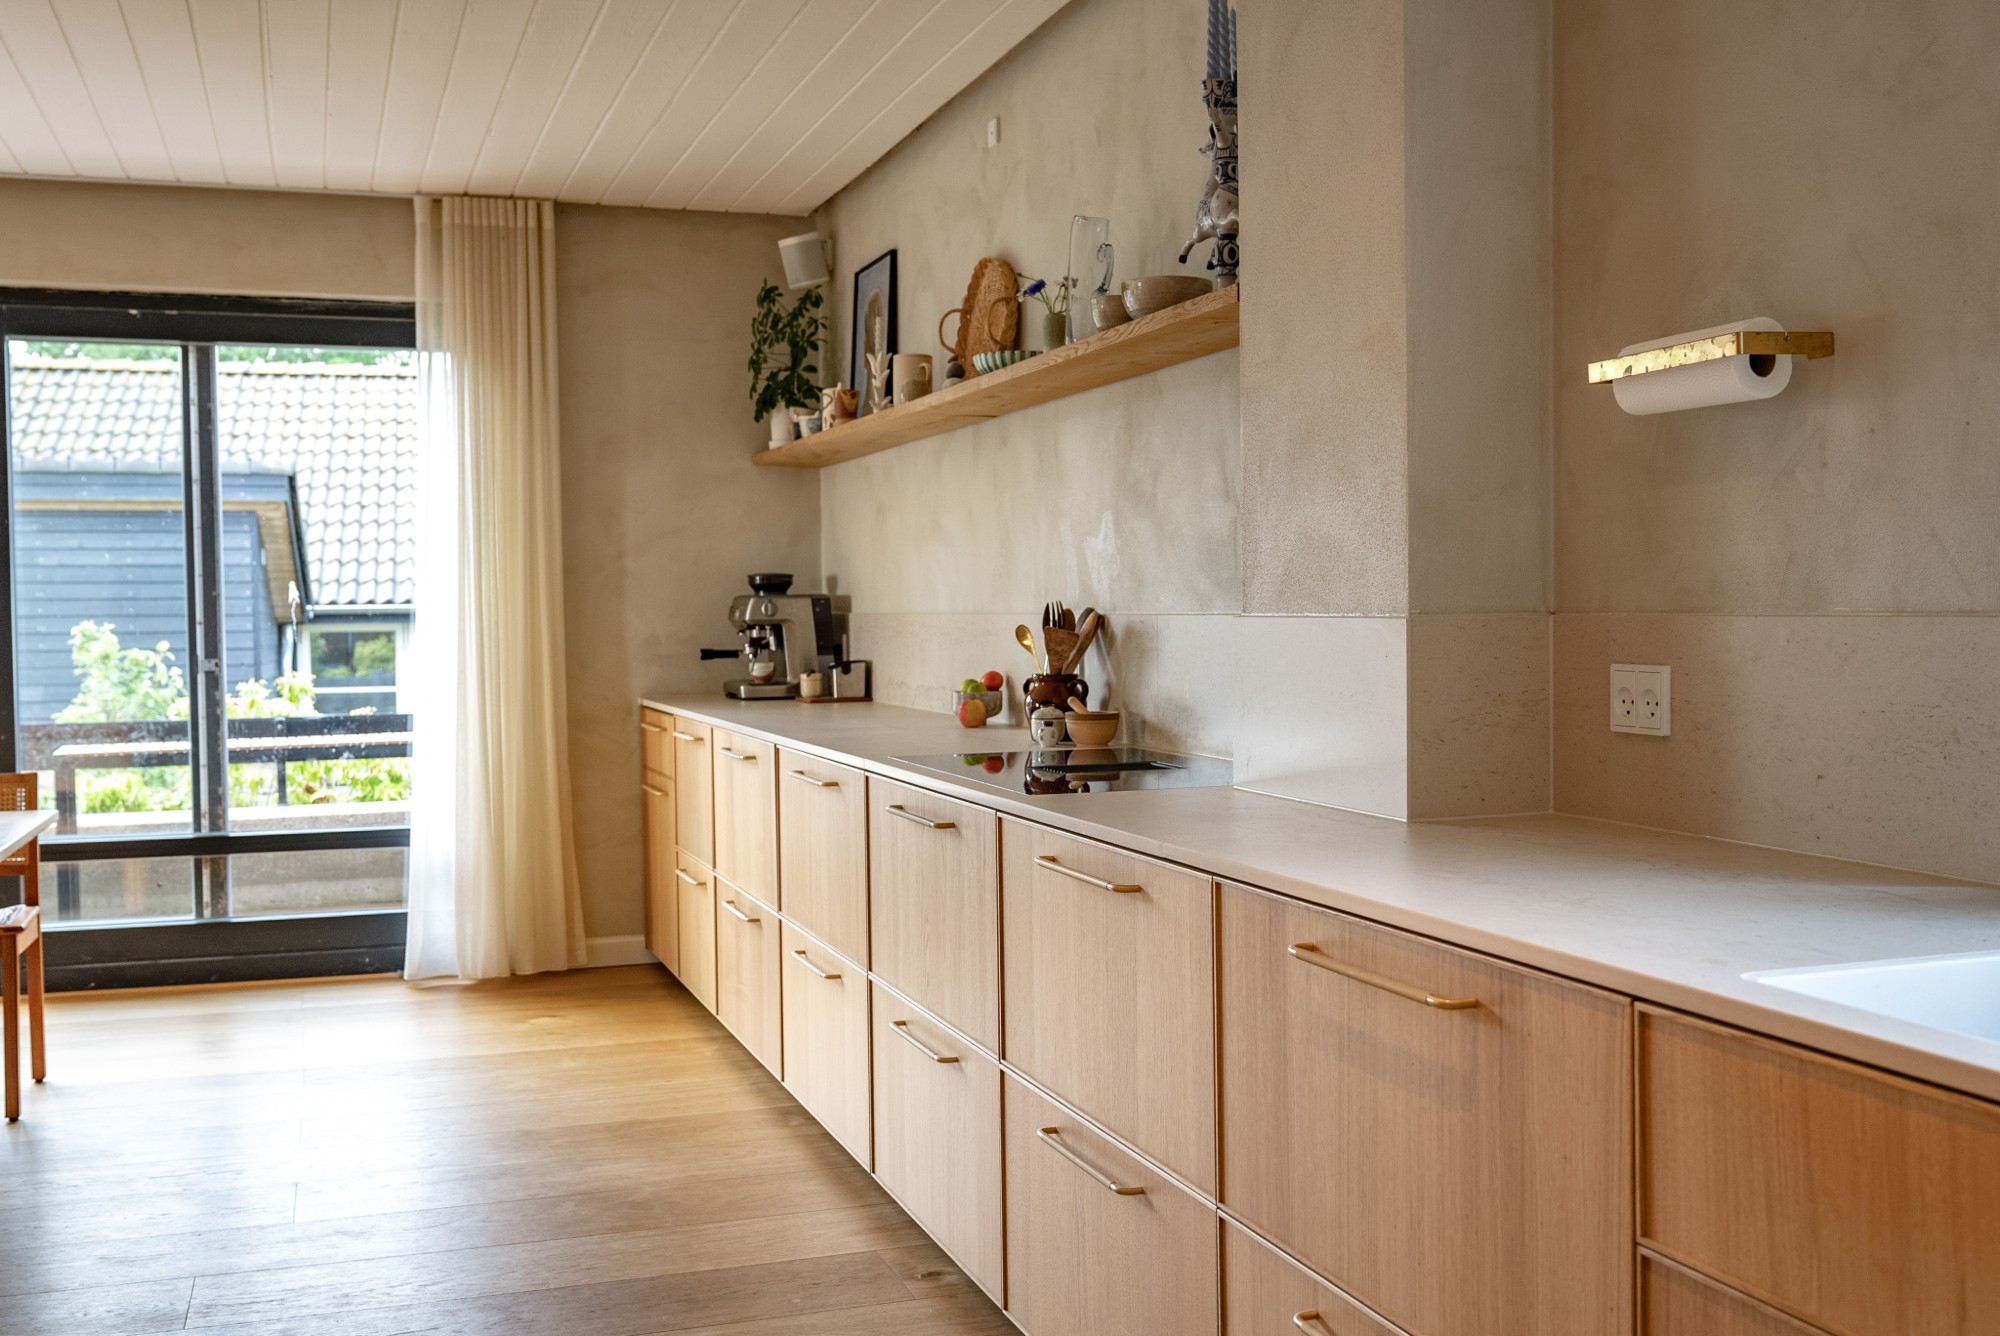 Numero immagine 31 della sezione corrente di A seamless worktop for a Nordic home renovated with love di Cosentino Italia